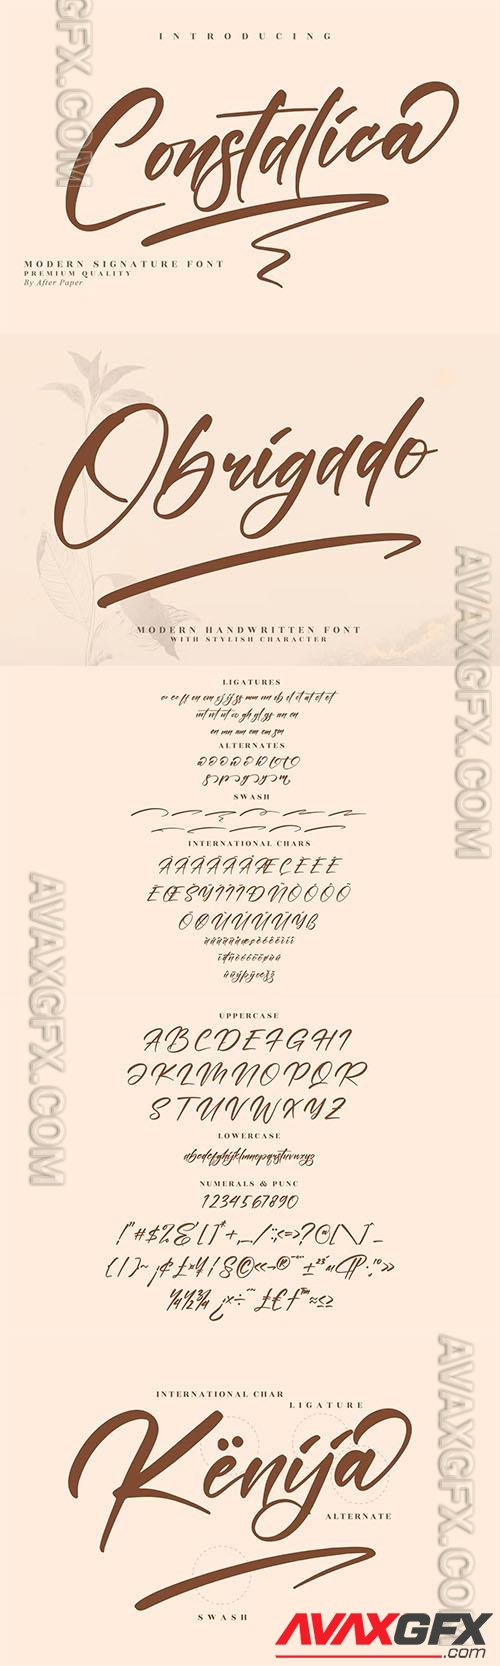 Constalica Modern Signature Font LS 73PB23U